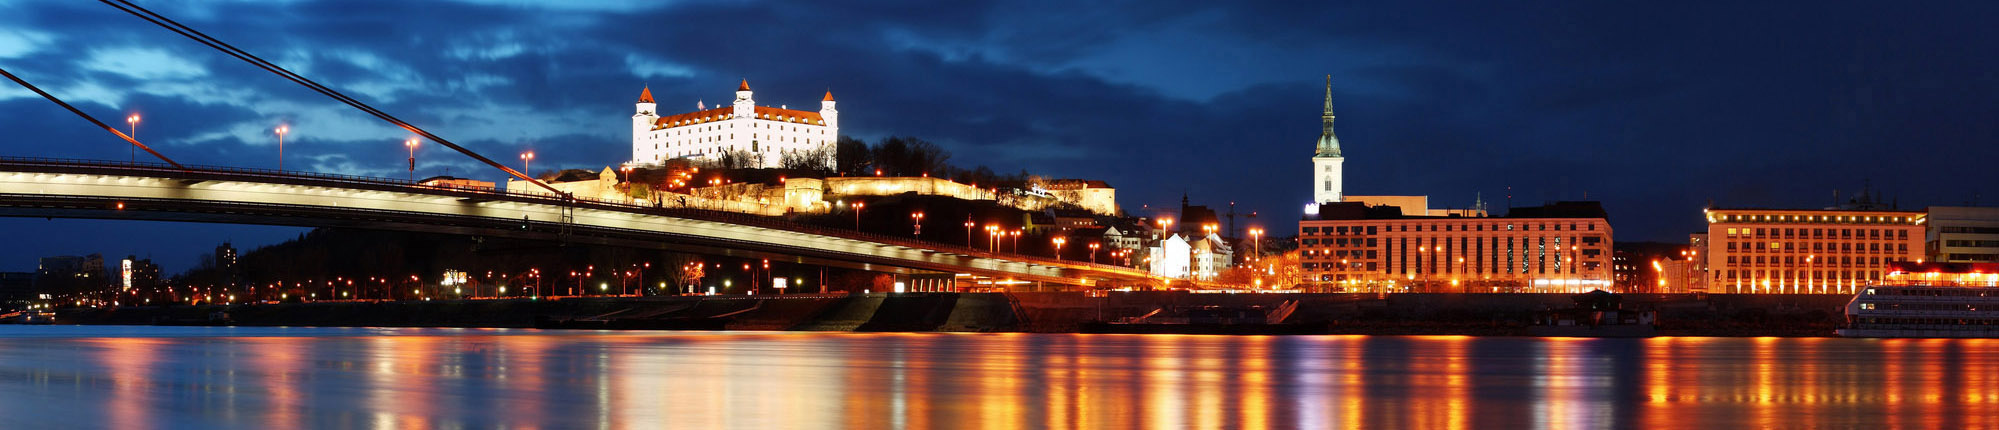 Панорамний вид на Братиславу в сутінках, який включає міст, освітлені будівлі, включаючи замок на горі, та відображення на воді. 